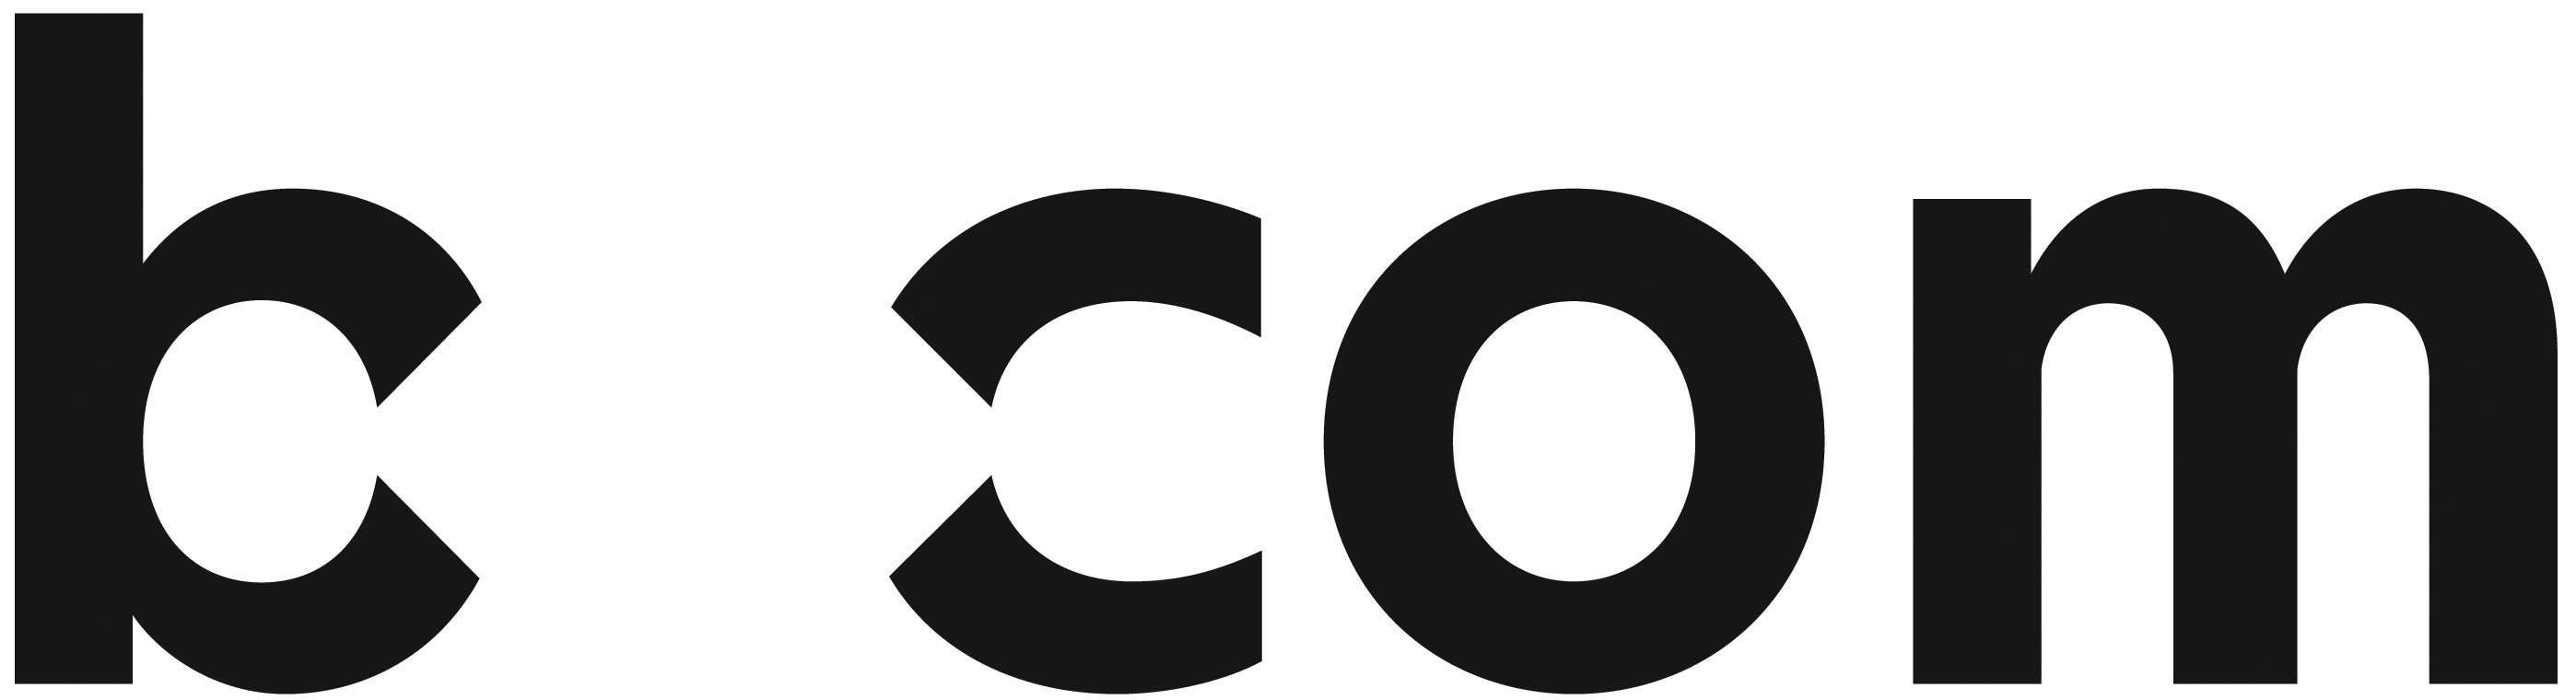 bcom logo